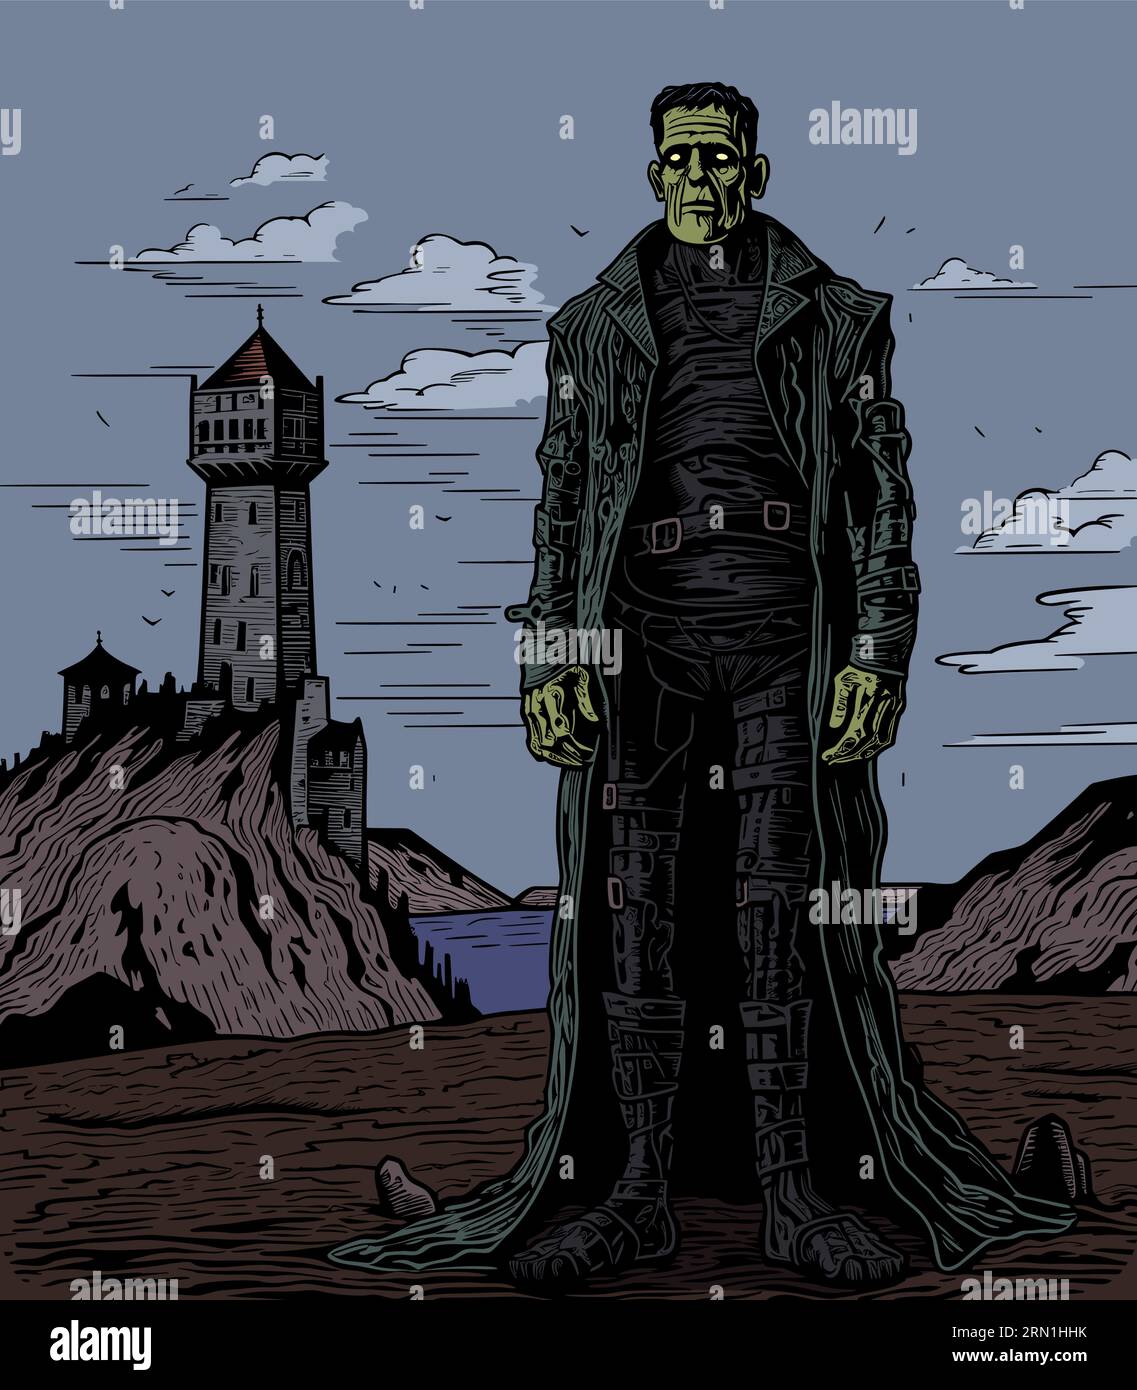 Illustration des Frankensteinmonsters, das vor der Burg seines Herrn steht. Stock Vektor